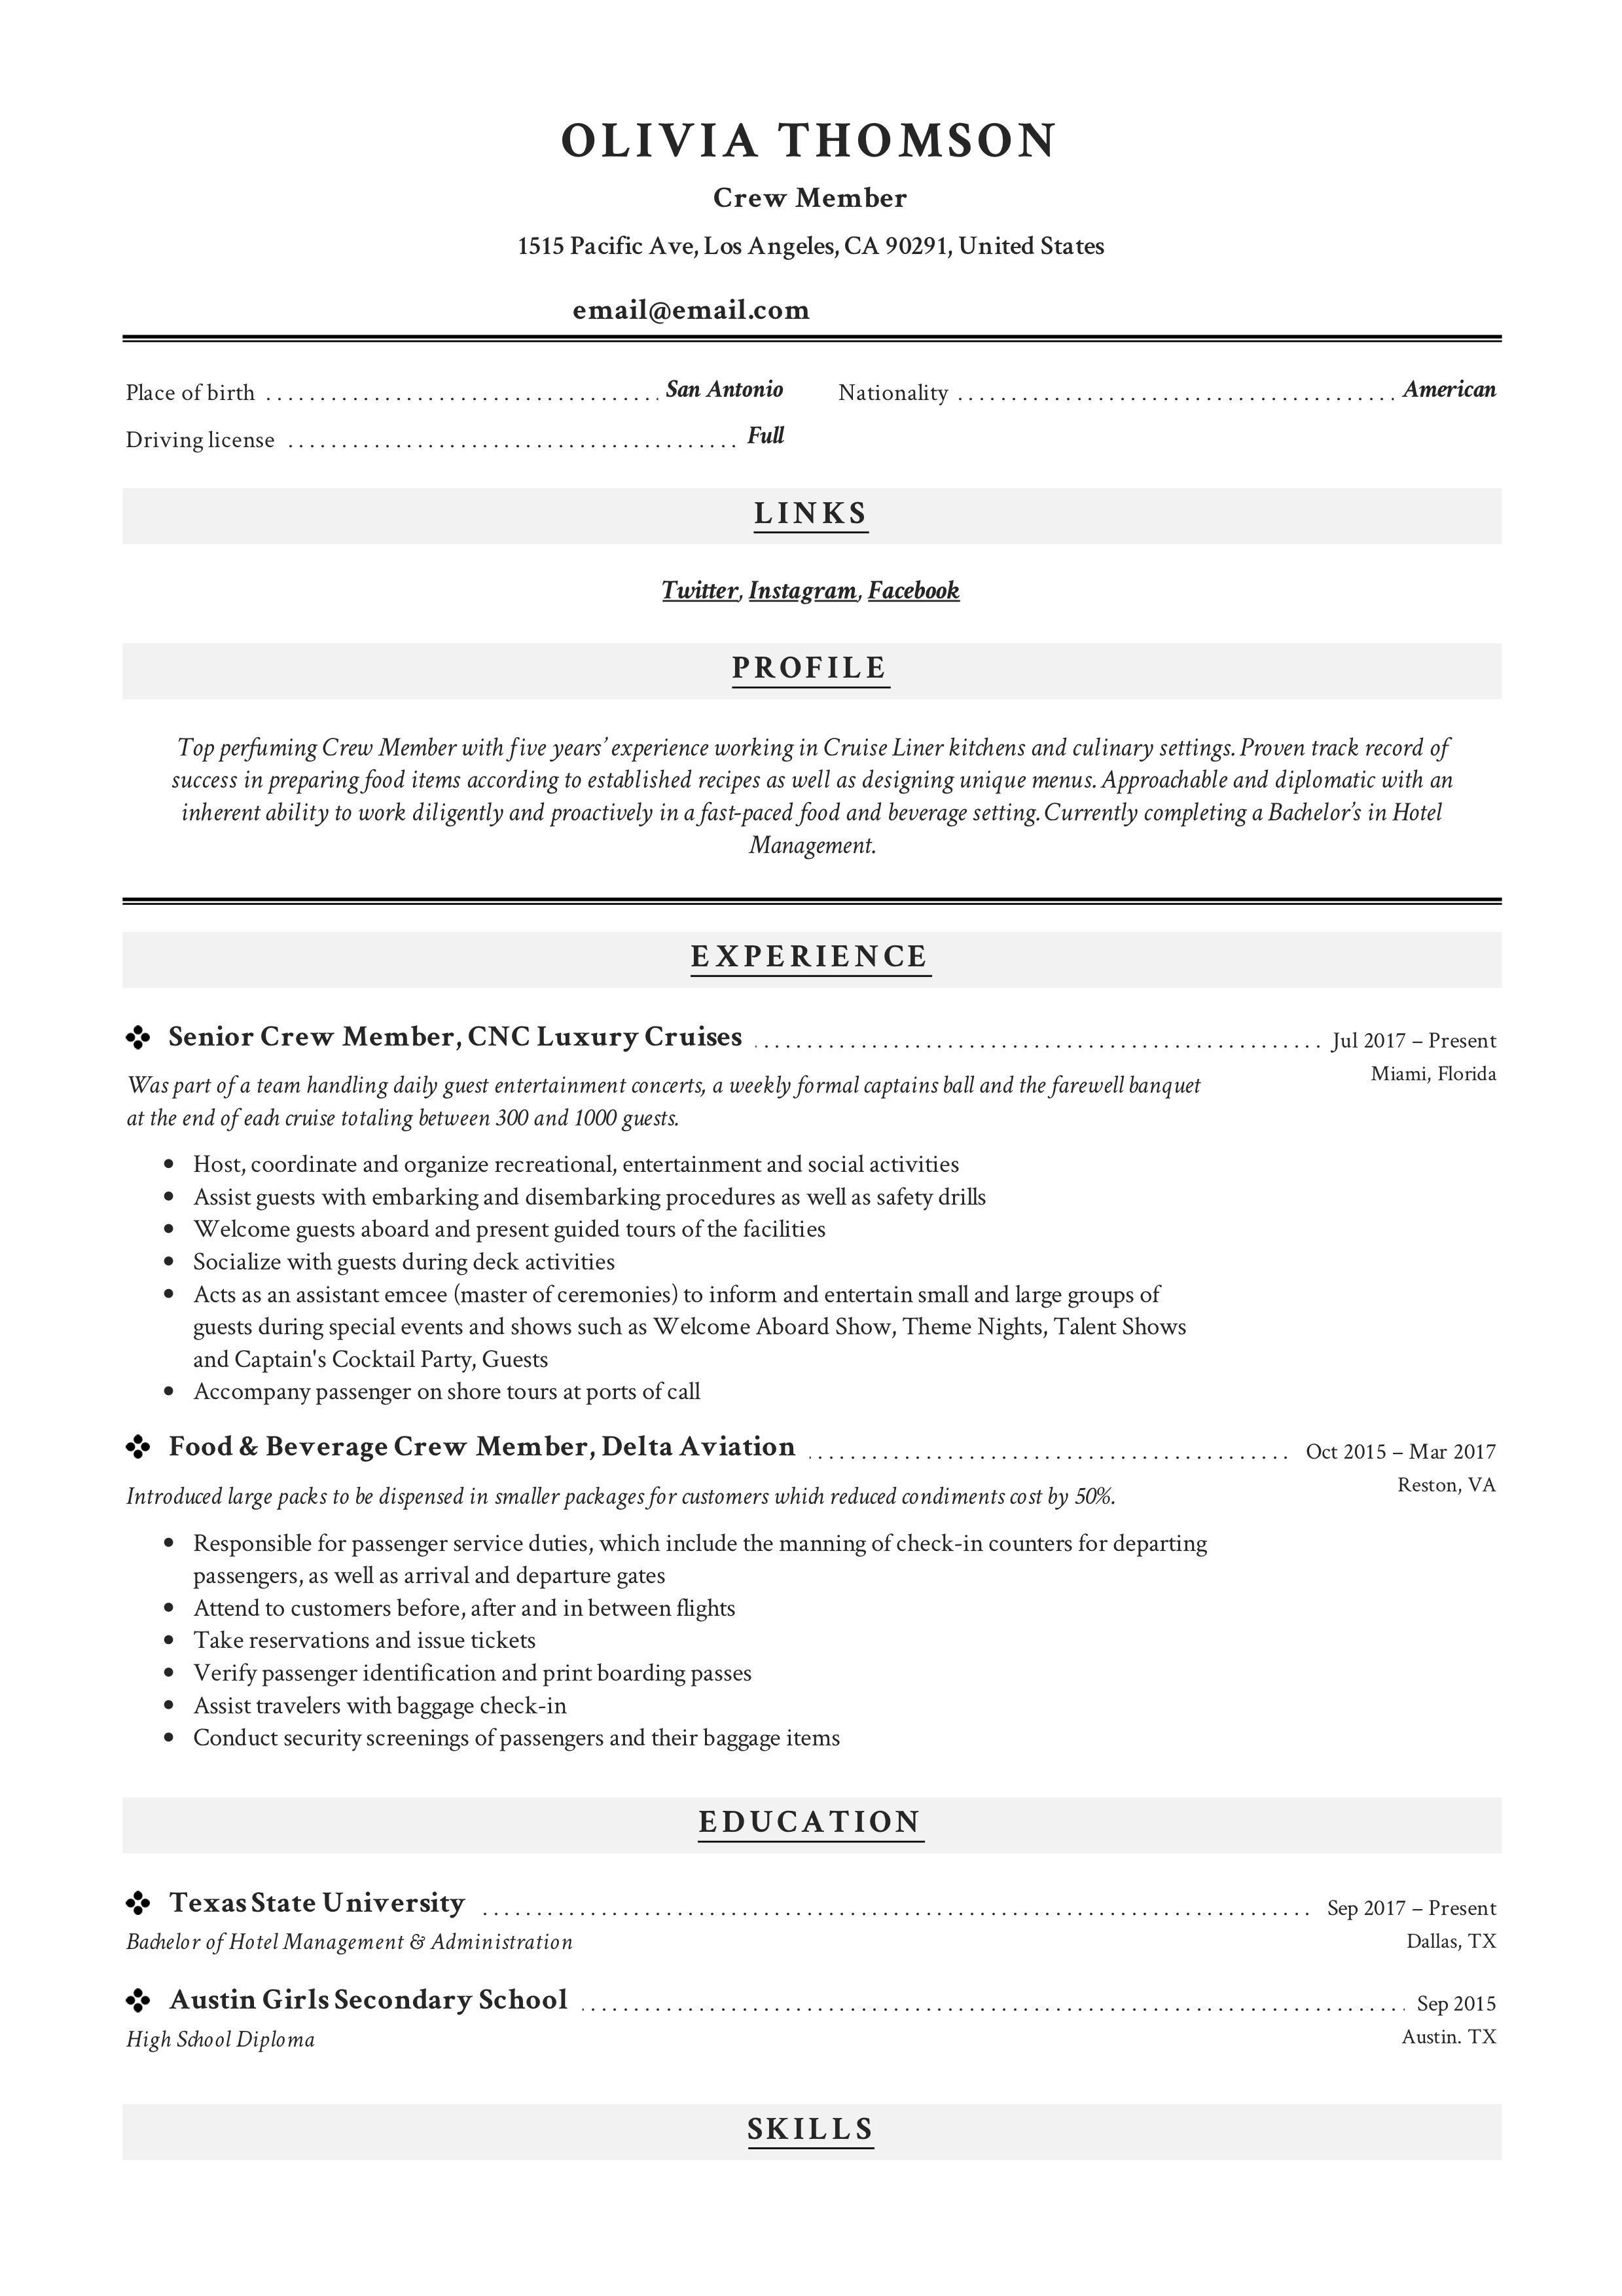 Crew member modern resume